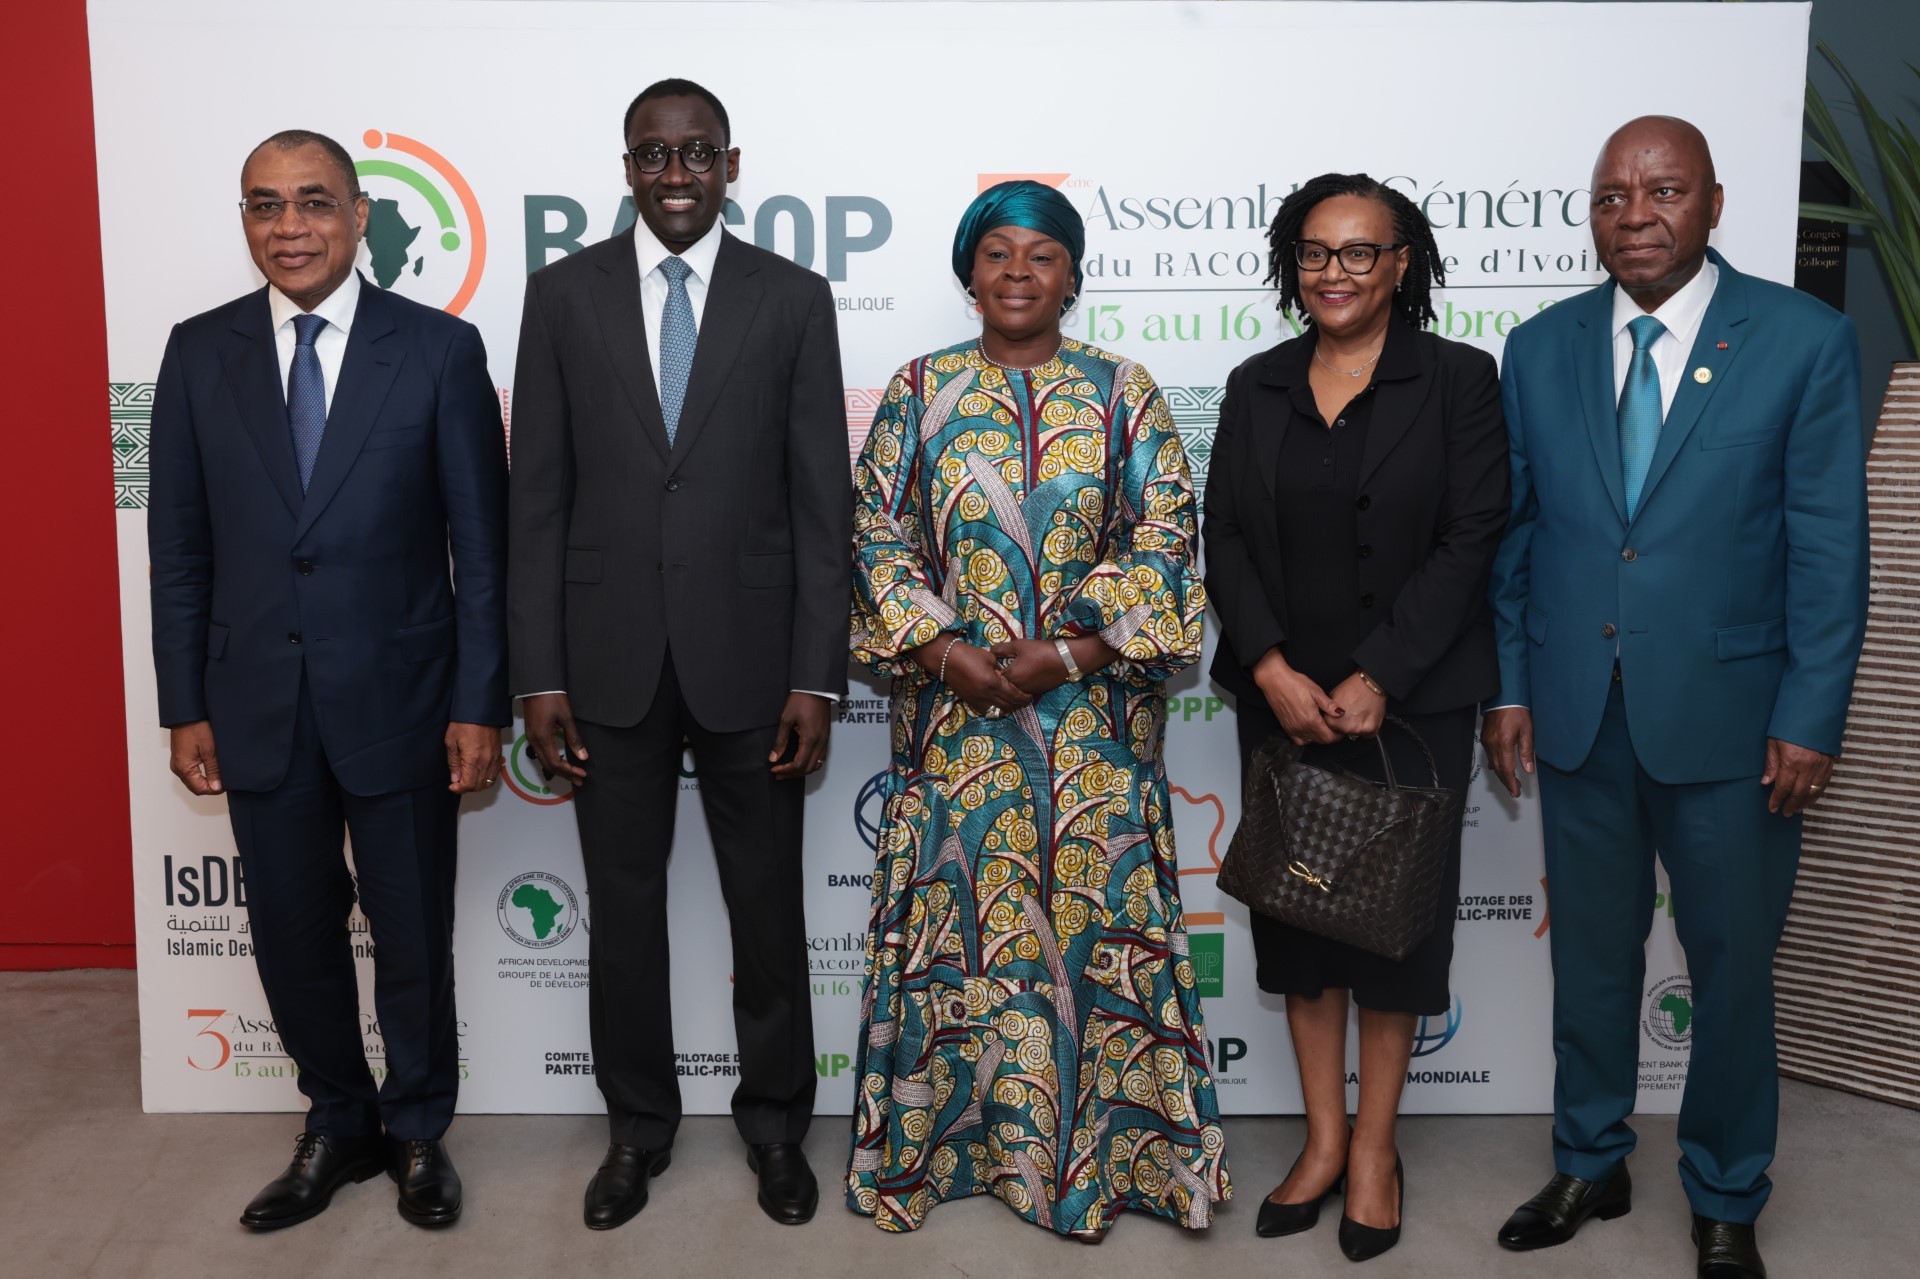 La 3e Assemblée Générale du RACOP en Côte d’Ivoire confirme les ambitions communes d’une commande publique moderne et durable